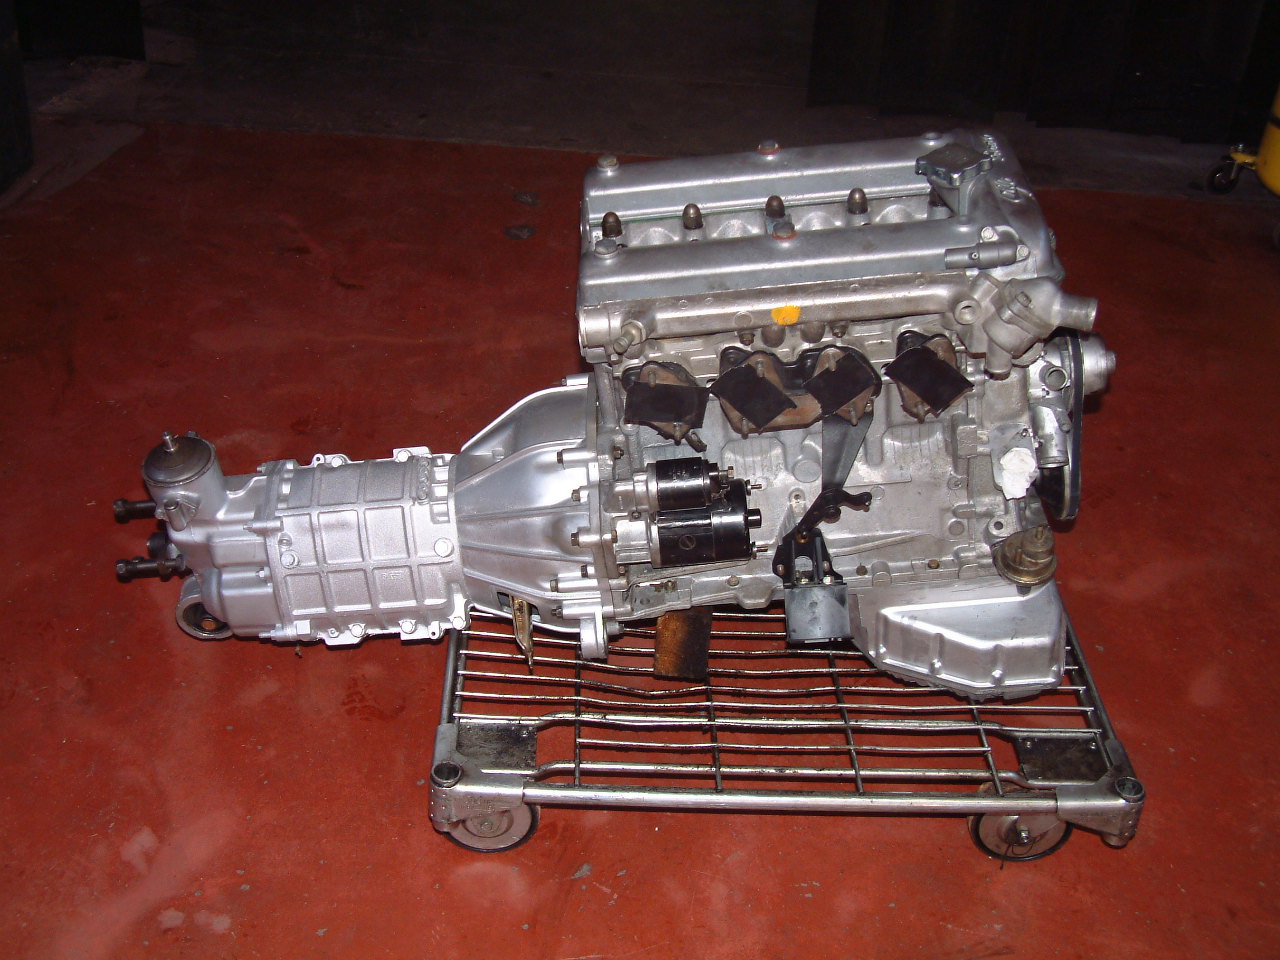 Alfa Romeo: réparation rectification restauration moteur, boite de vitesse, pont, boitier de direction